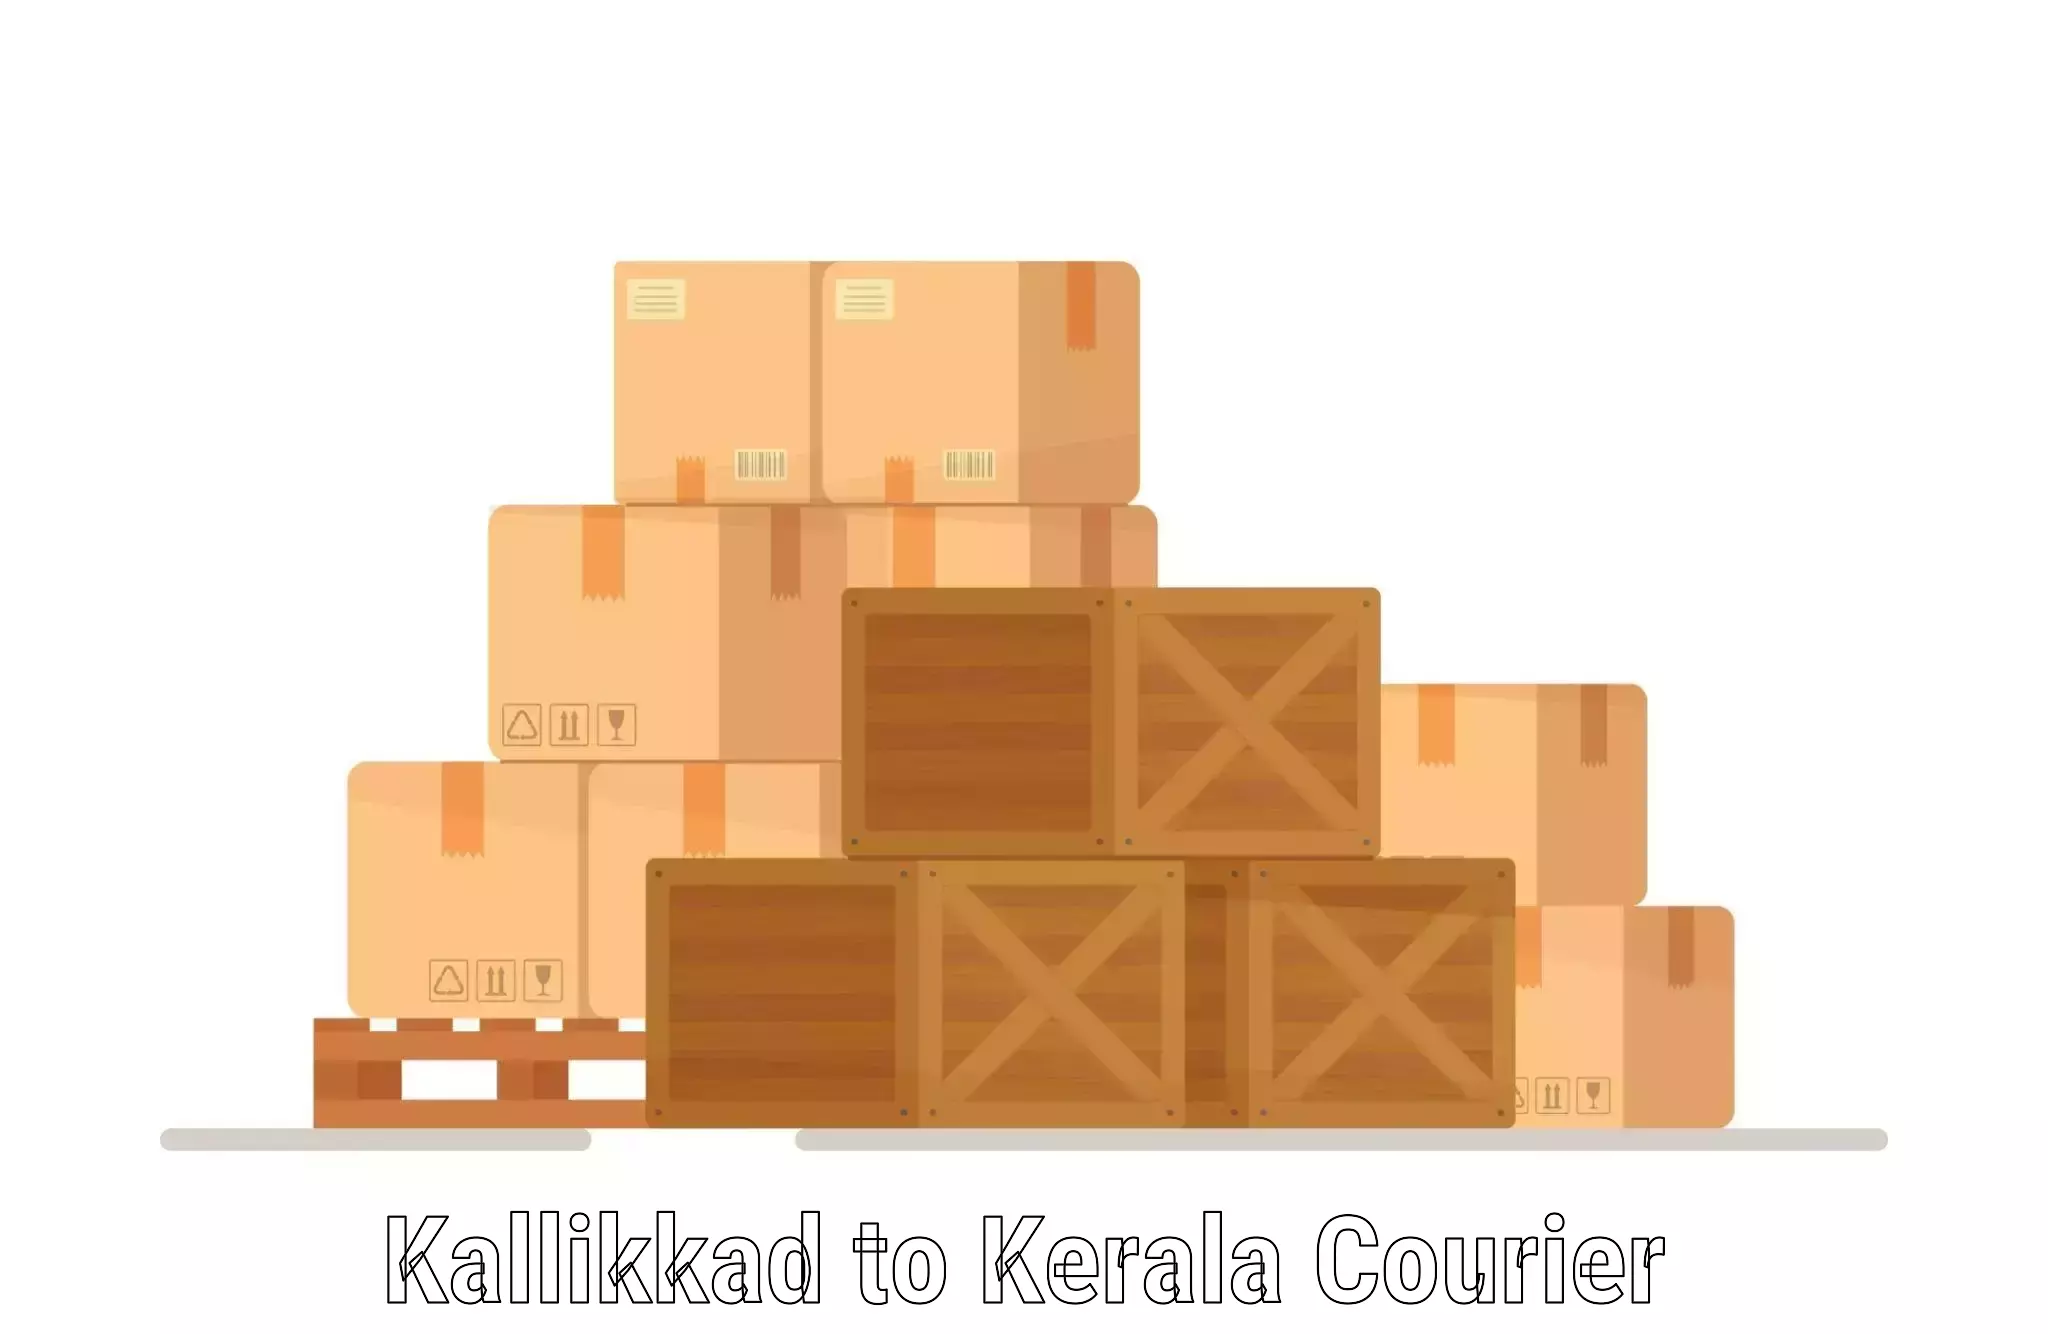 Courier service innovation Kallikkad to Kakkur